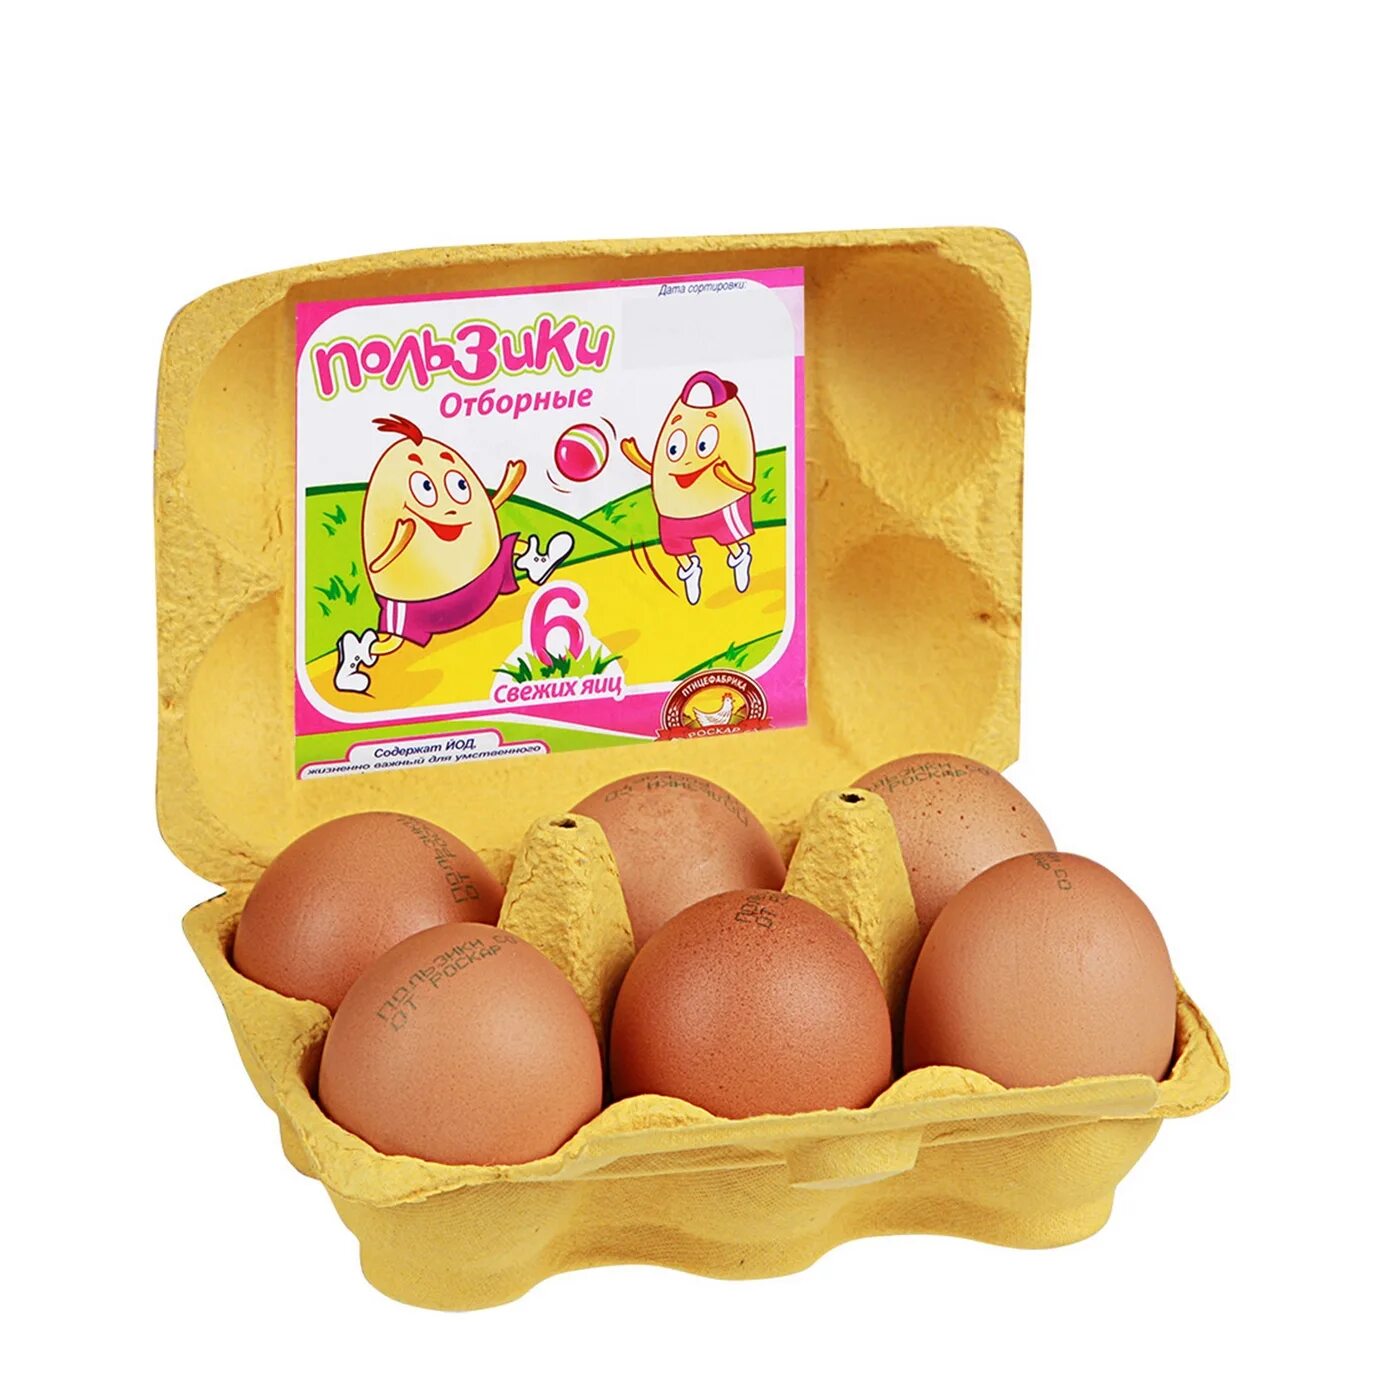 Яйца пользики. Упаковка для яиц. Яйца куриные в упаковке. Упаковка для яиц 6 штук.